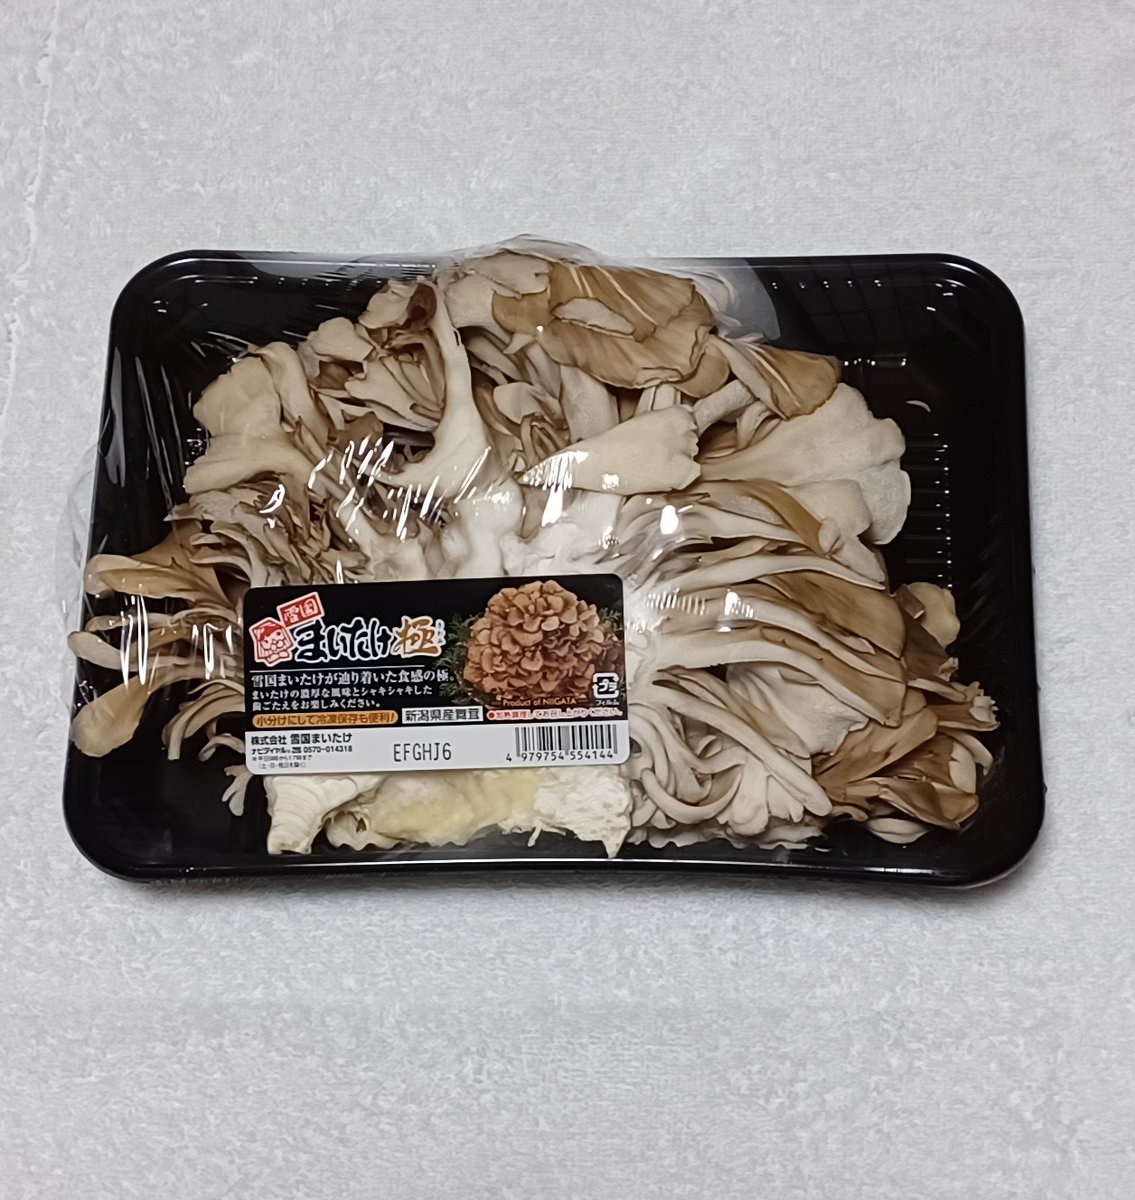 Maitake mushroom🍄

#maitakemushroom #mushroom